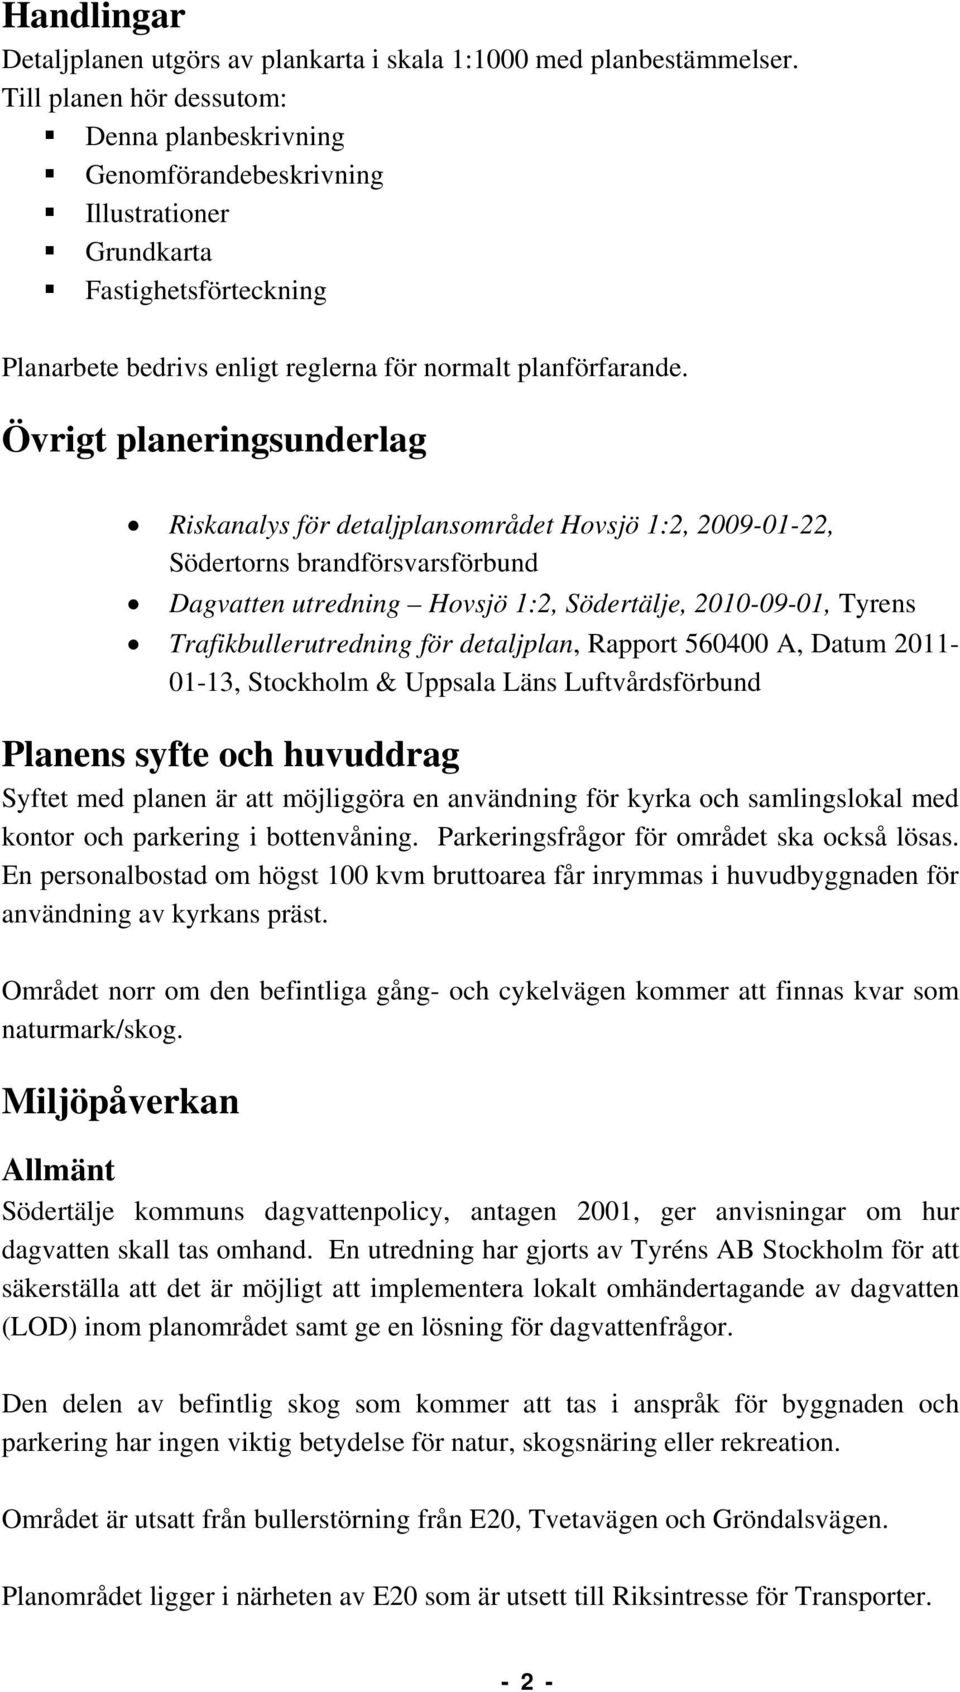 Övrigt planeringsunderlag Riskanalys för detaljplansområdet Hovsjö 1:2, 2009-01-22, Södertorns brandförsvarsförbund Dagvatten utredning Hovsjö 1:2, Södertälje, 2010-09-01, Tyrens